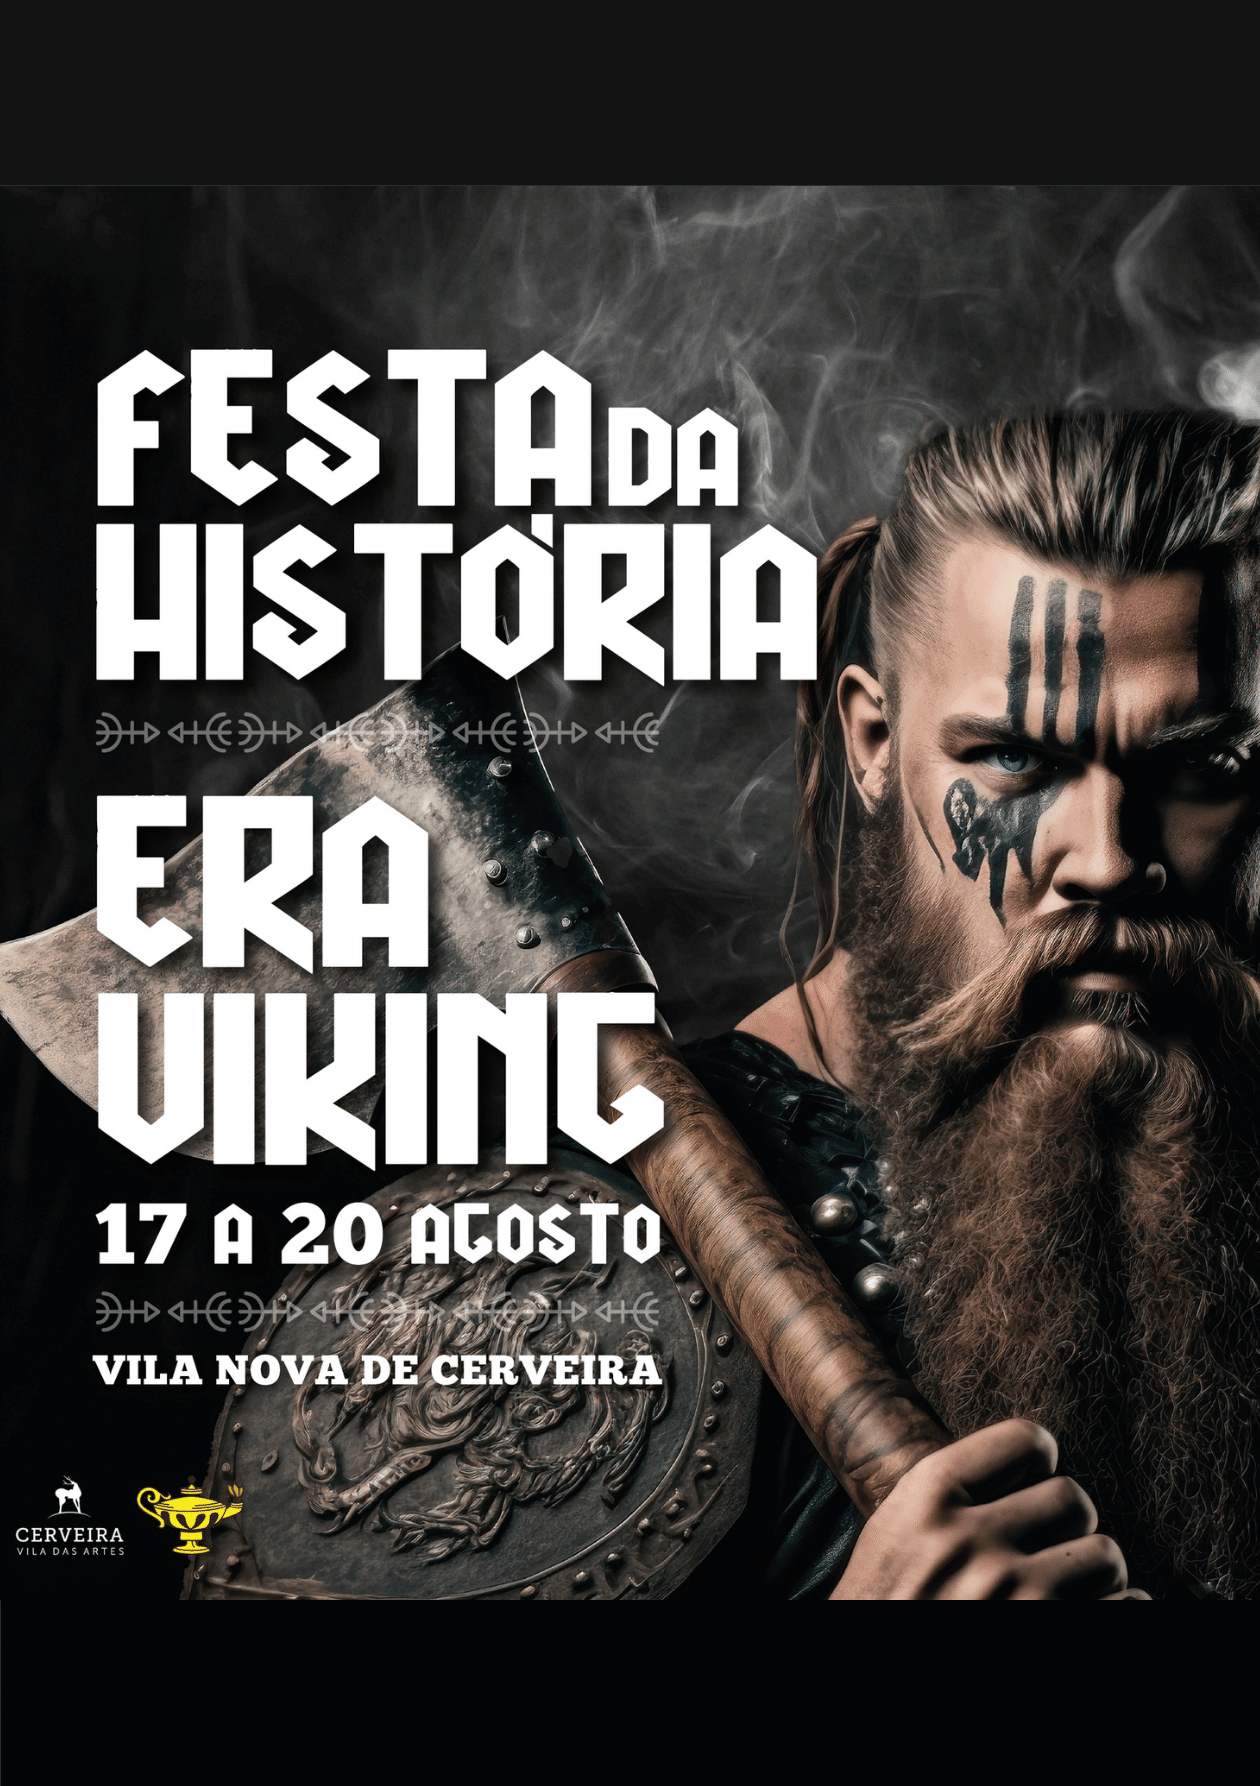 Vila Nova de Cerveira - Festa da História